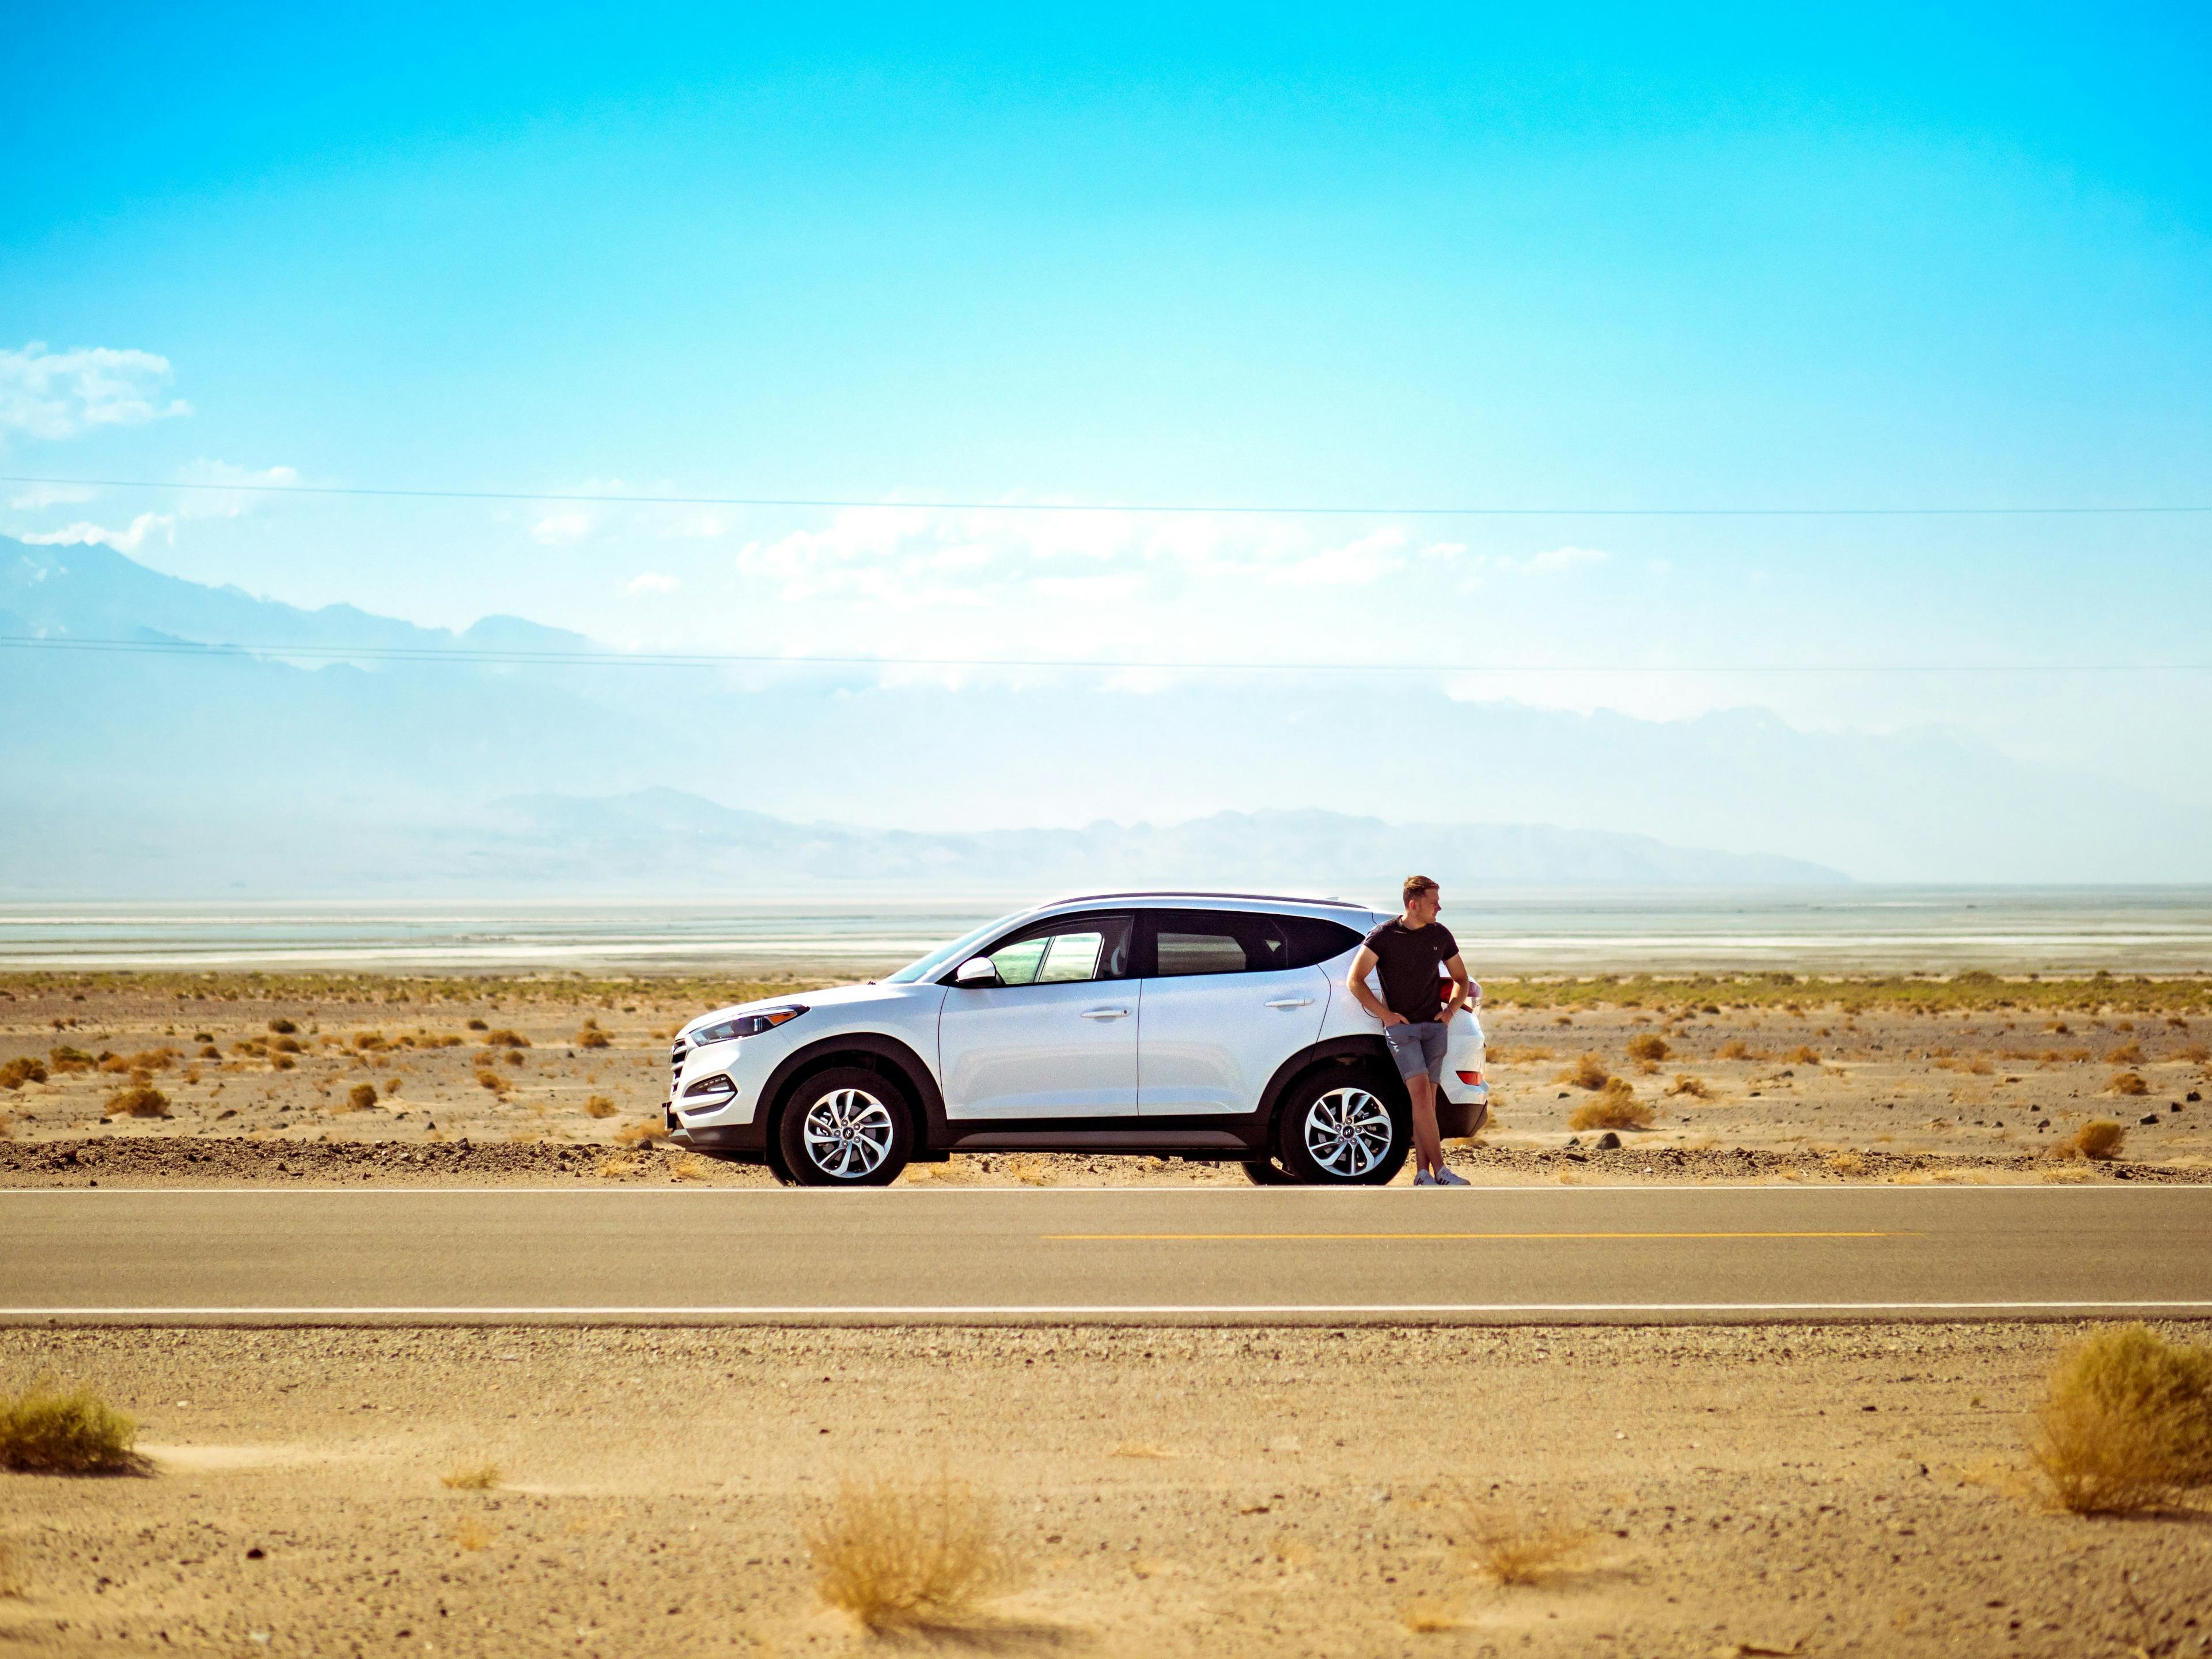 En mann ute i ørkenen med sin hvite bil etter at han tok et fleksibelt forbrukslån.